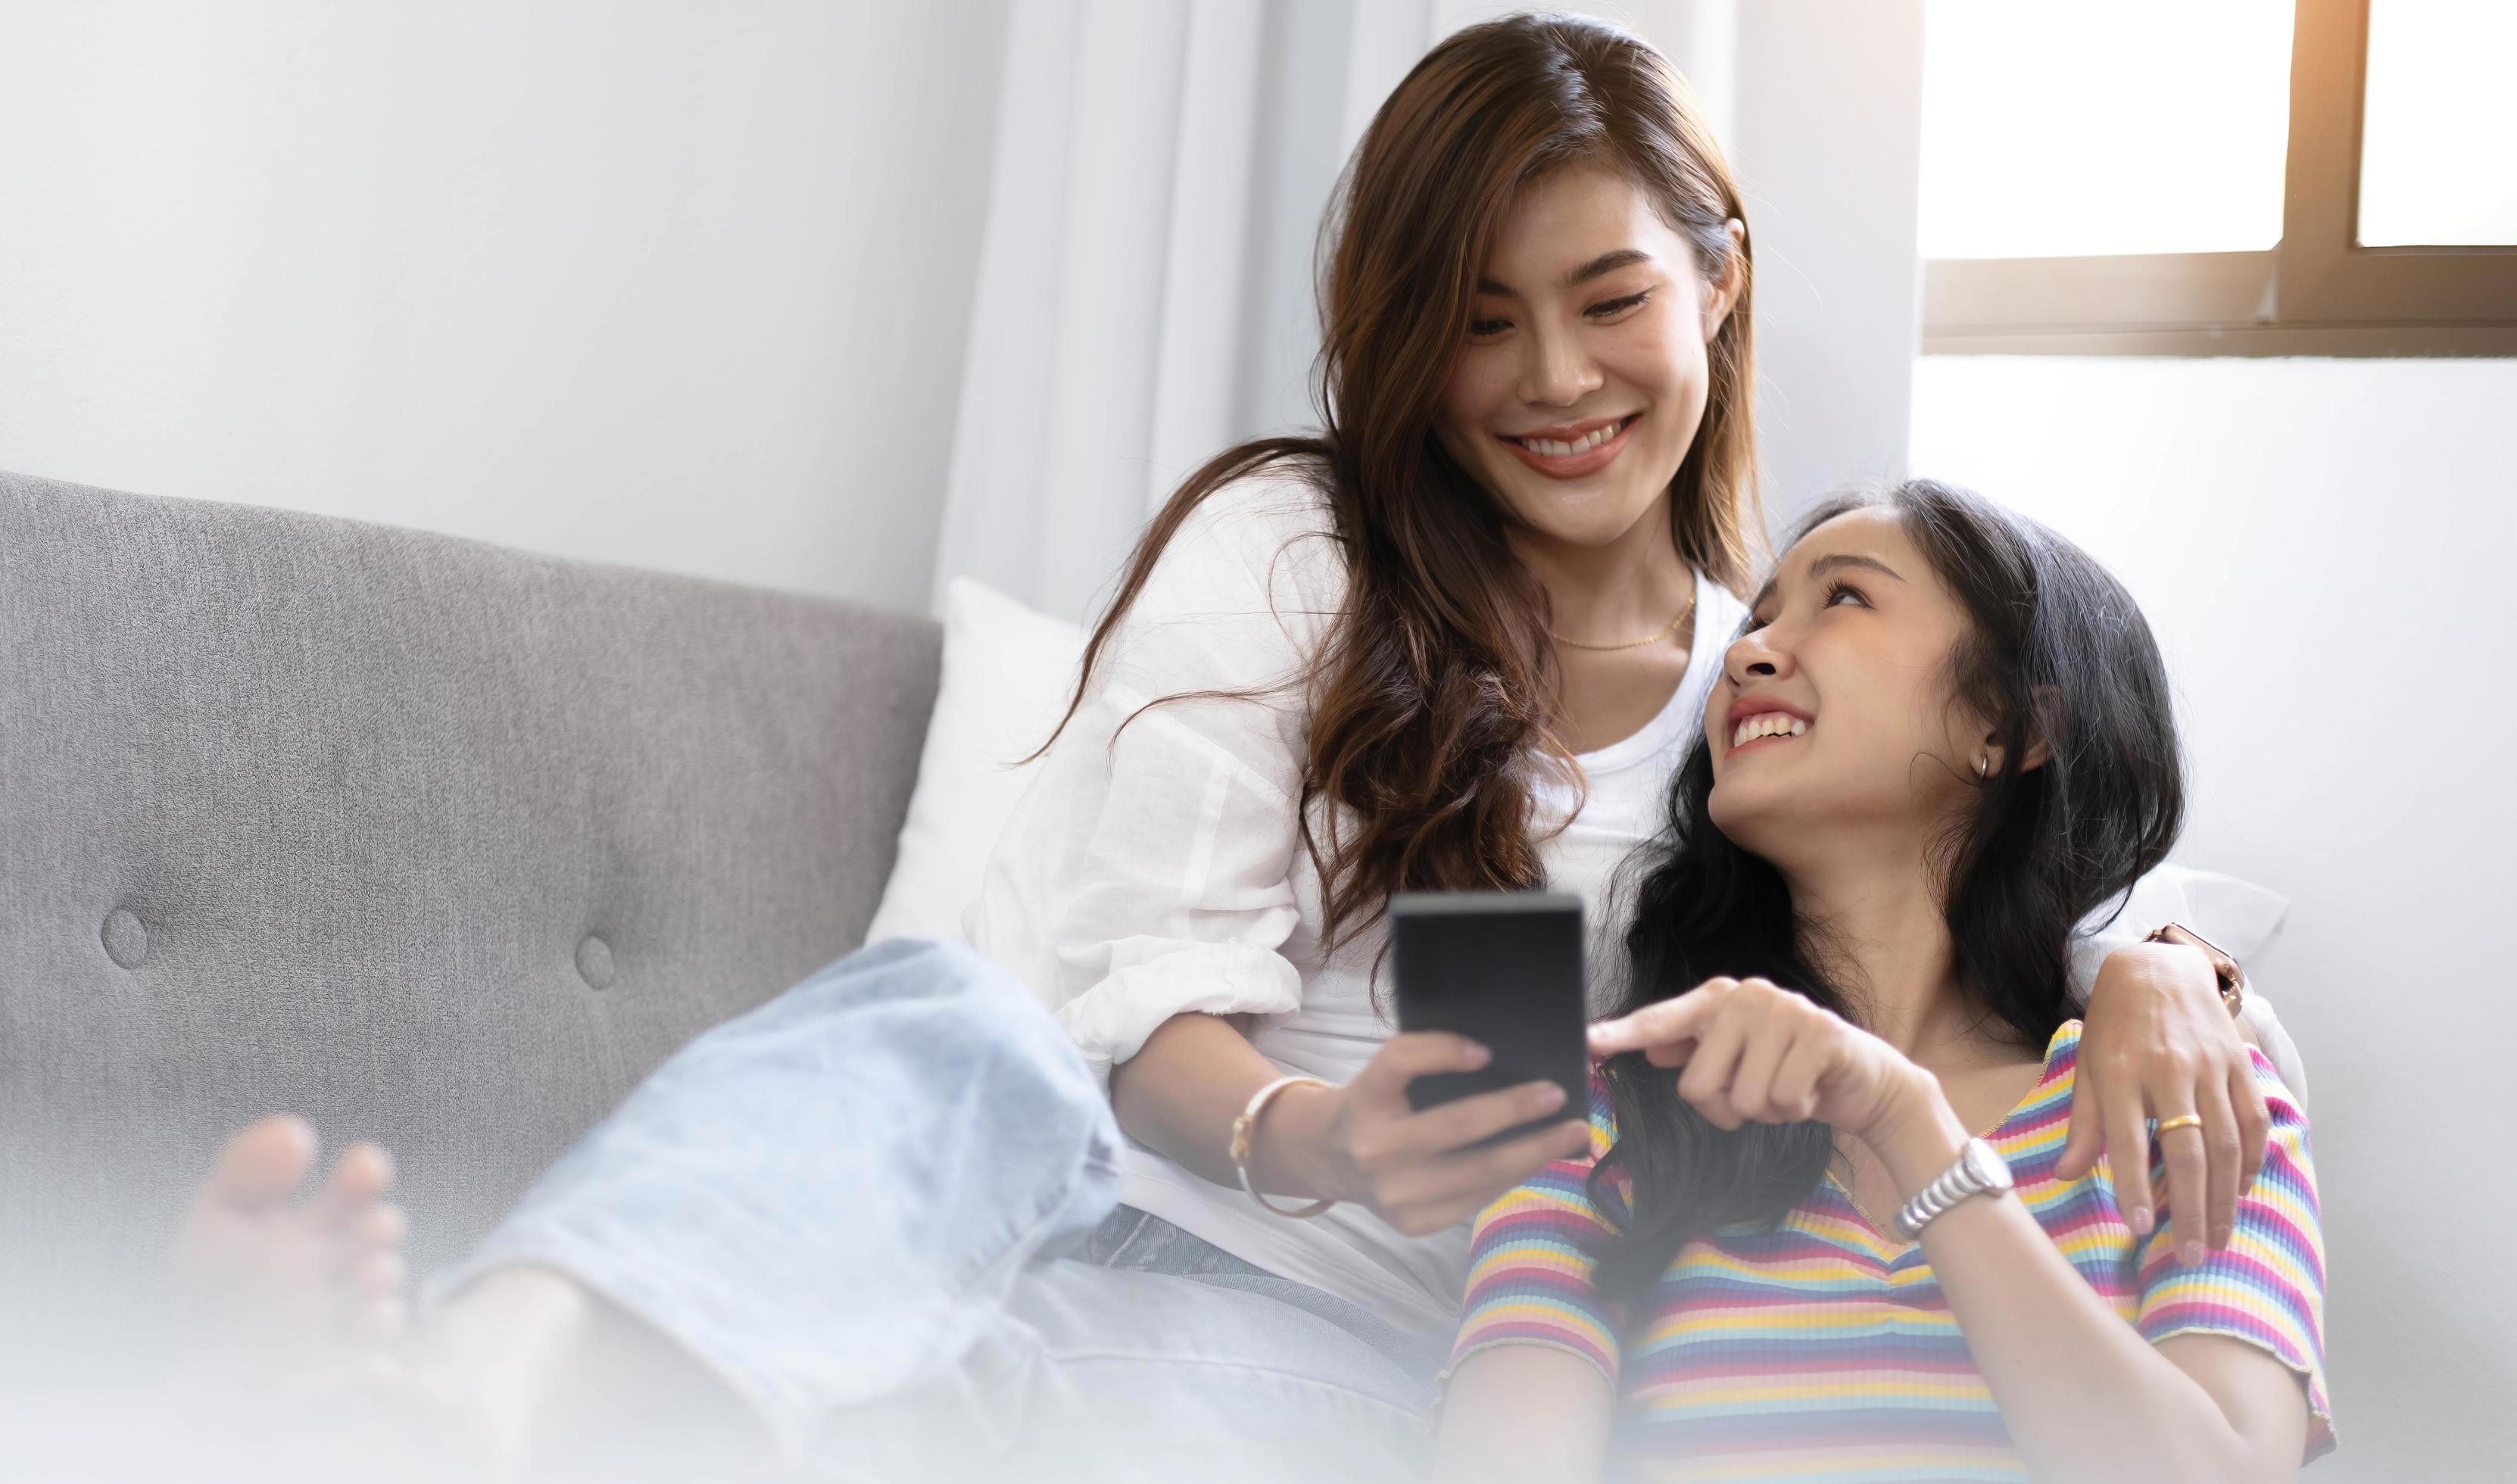 jonge mooie Aziatische vrouwen lesbisch koppel minnaar met behulp van smartphone video-oproep online in de woonkamer op de bank thuis met lachende face.concept van lgbt seksualiteit met gelukkige levensstijl samen afbeelding